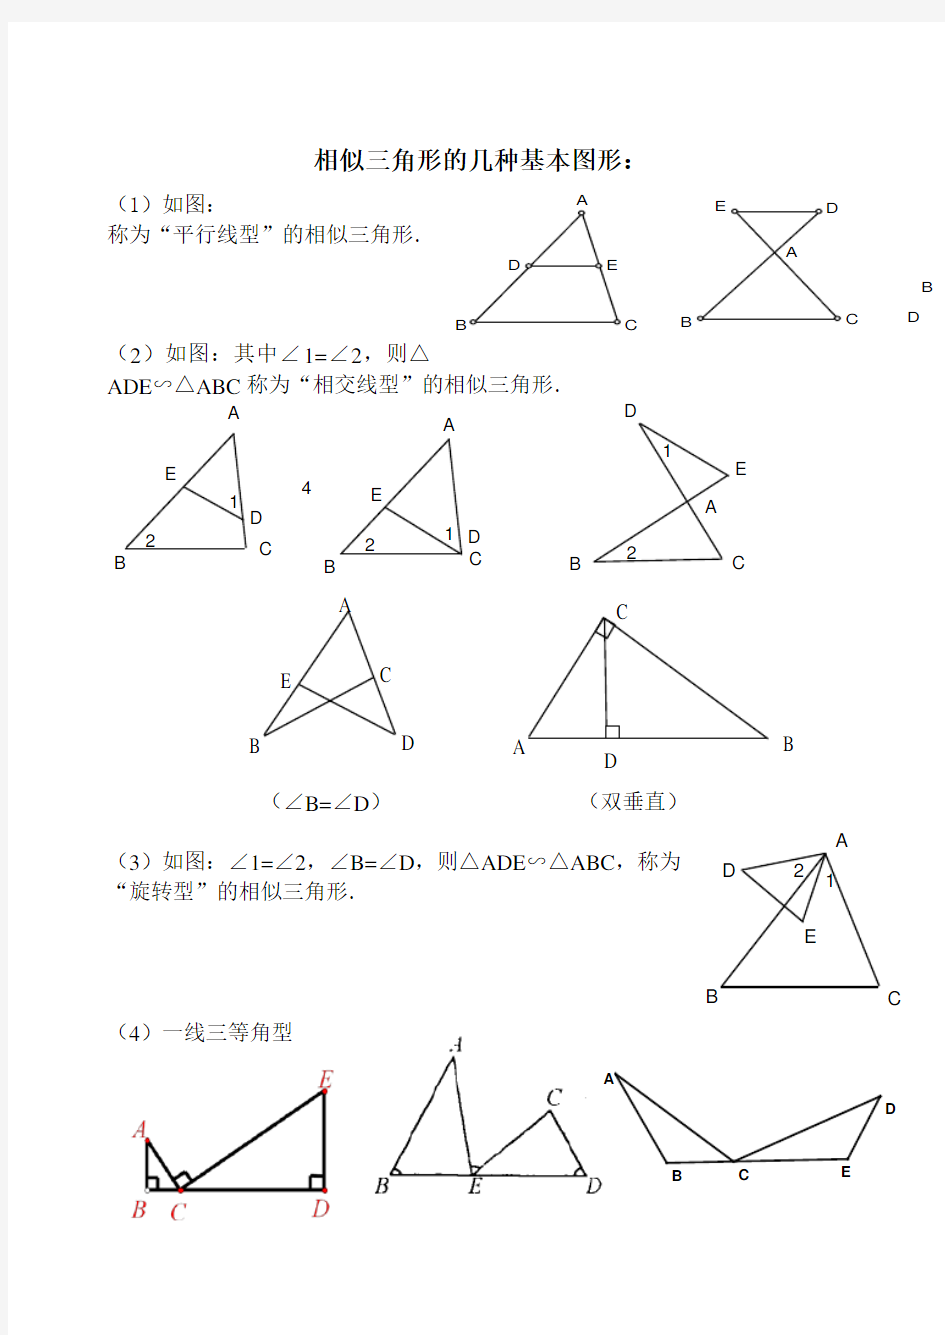 相似三角形的几种基本图形及复习题